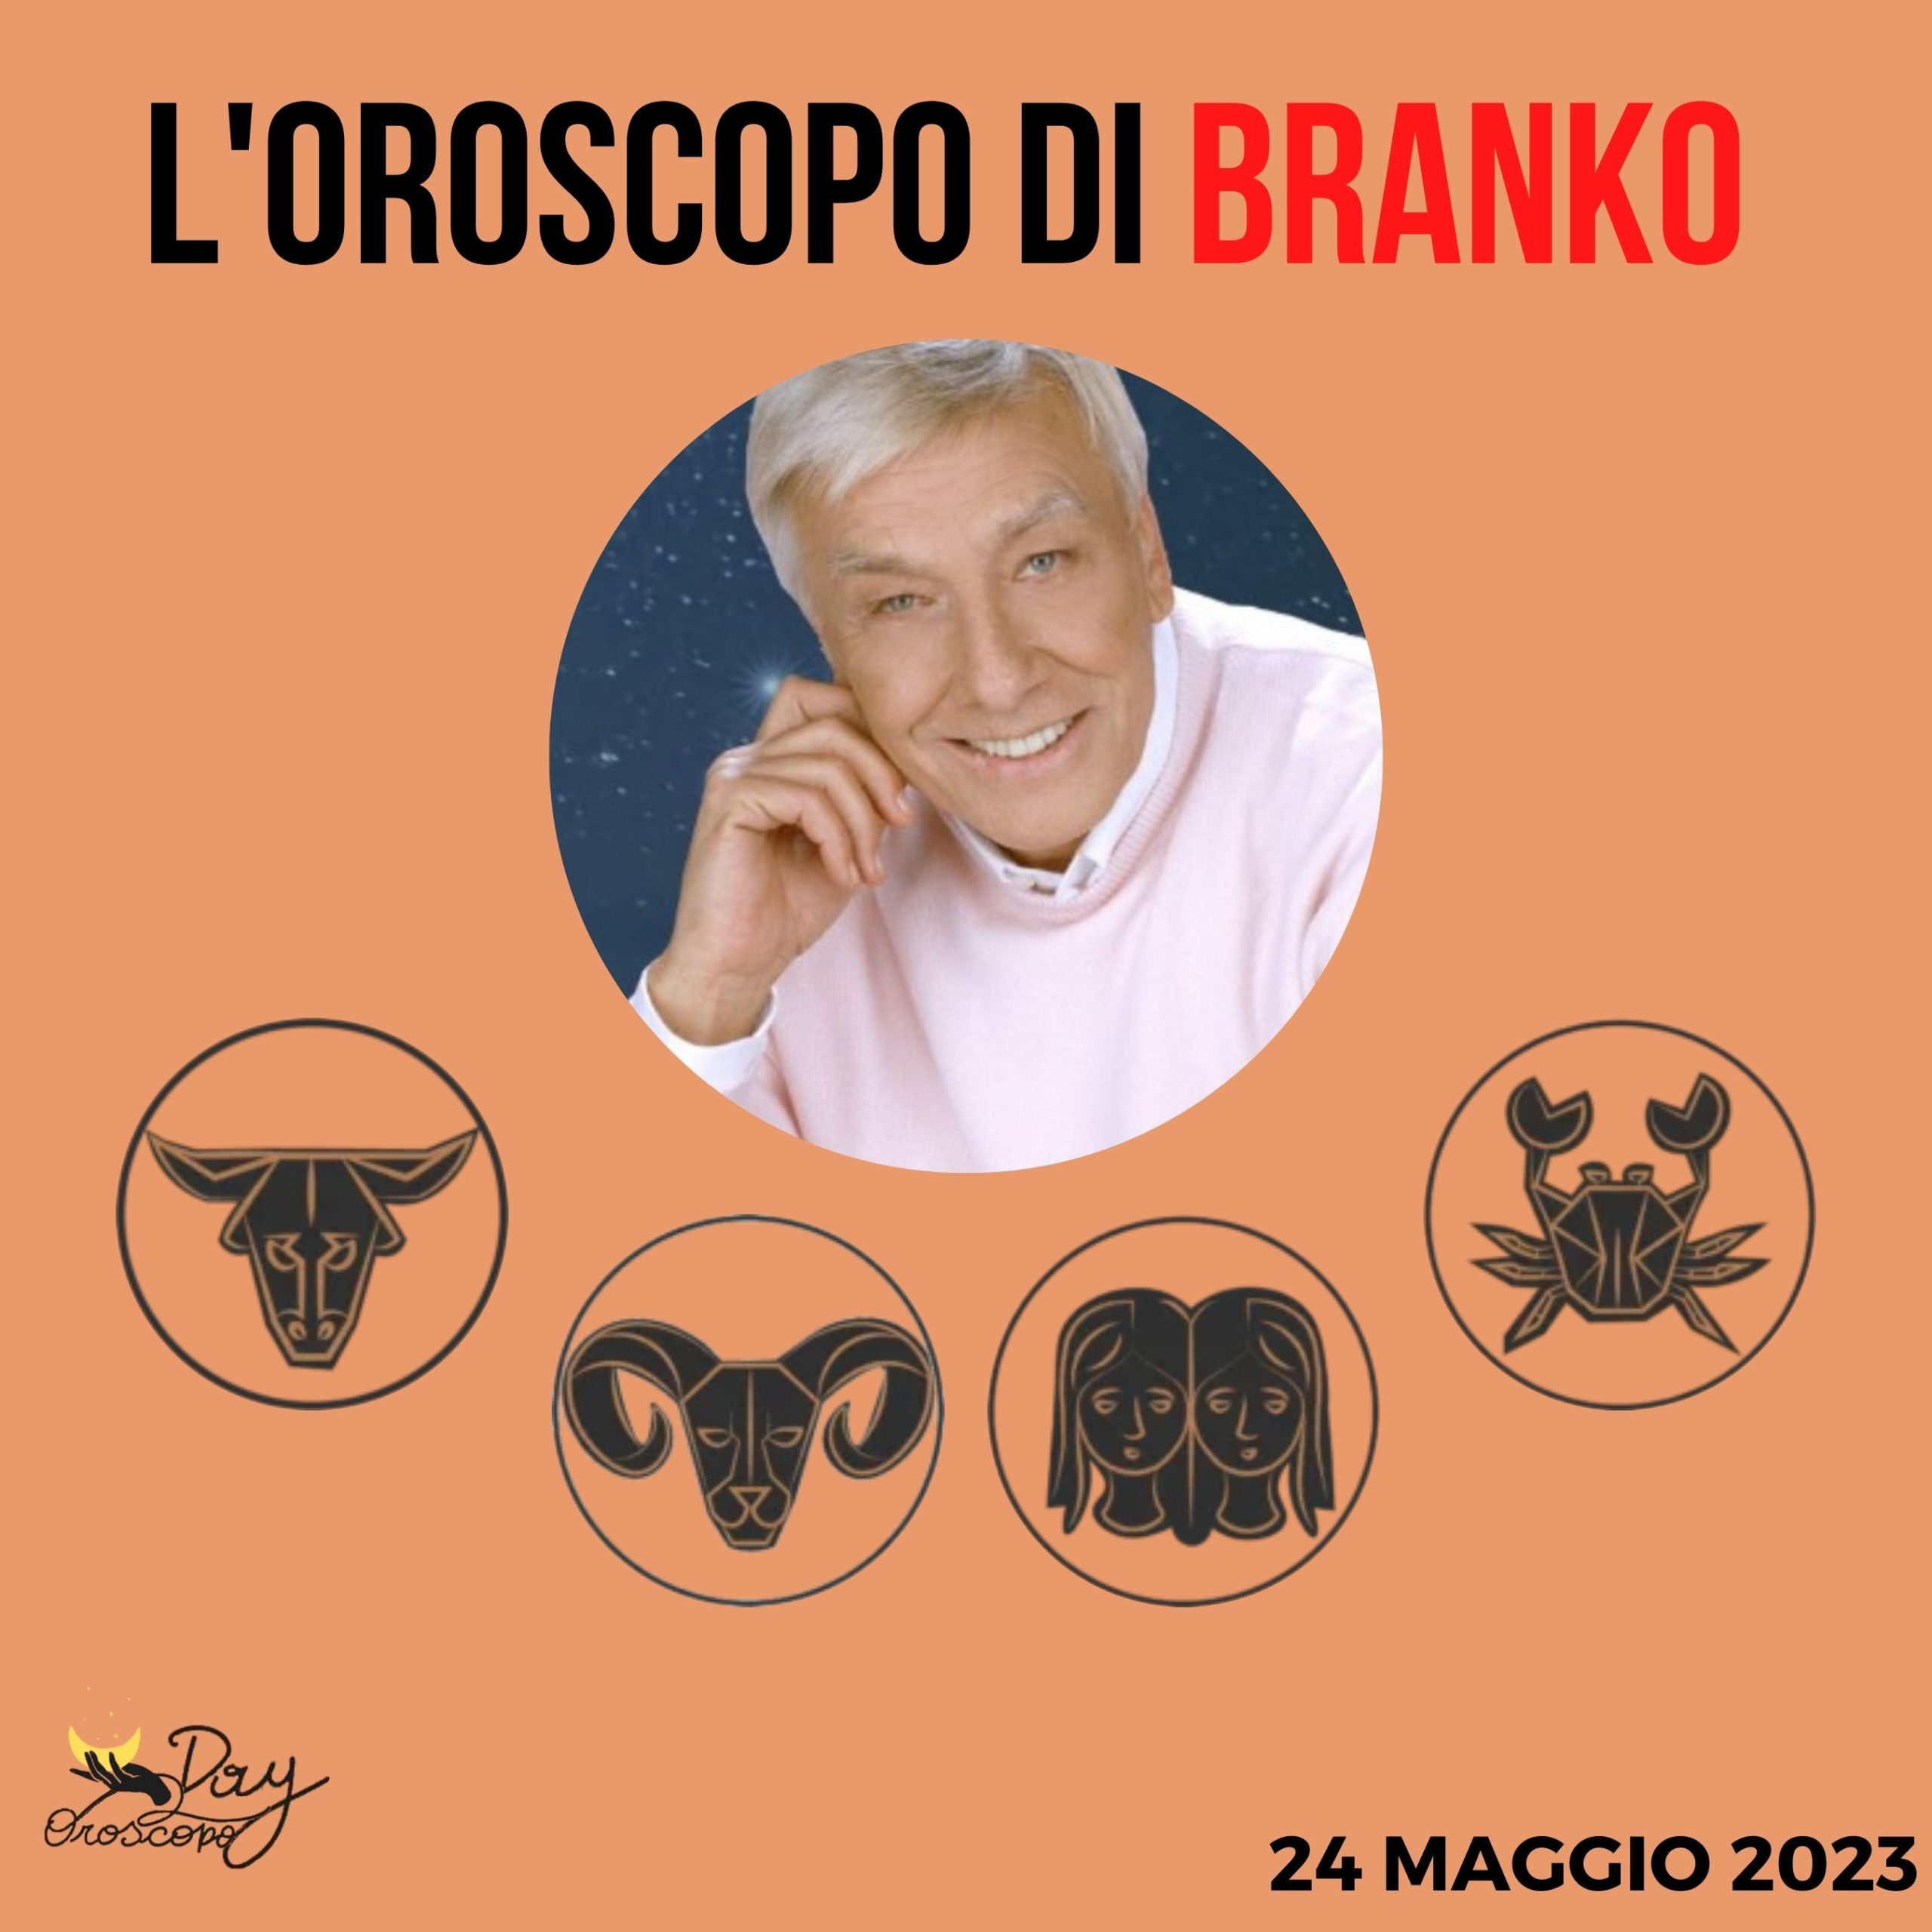 Oroscopo oggi domani Branko 24 maggio Toro Ariete Gemelli Cancro